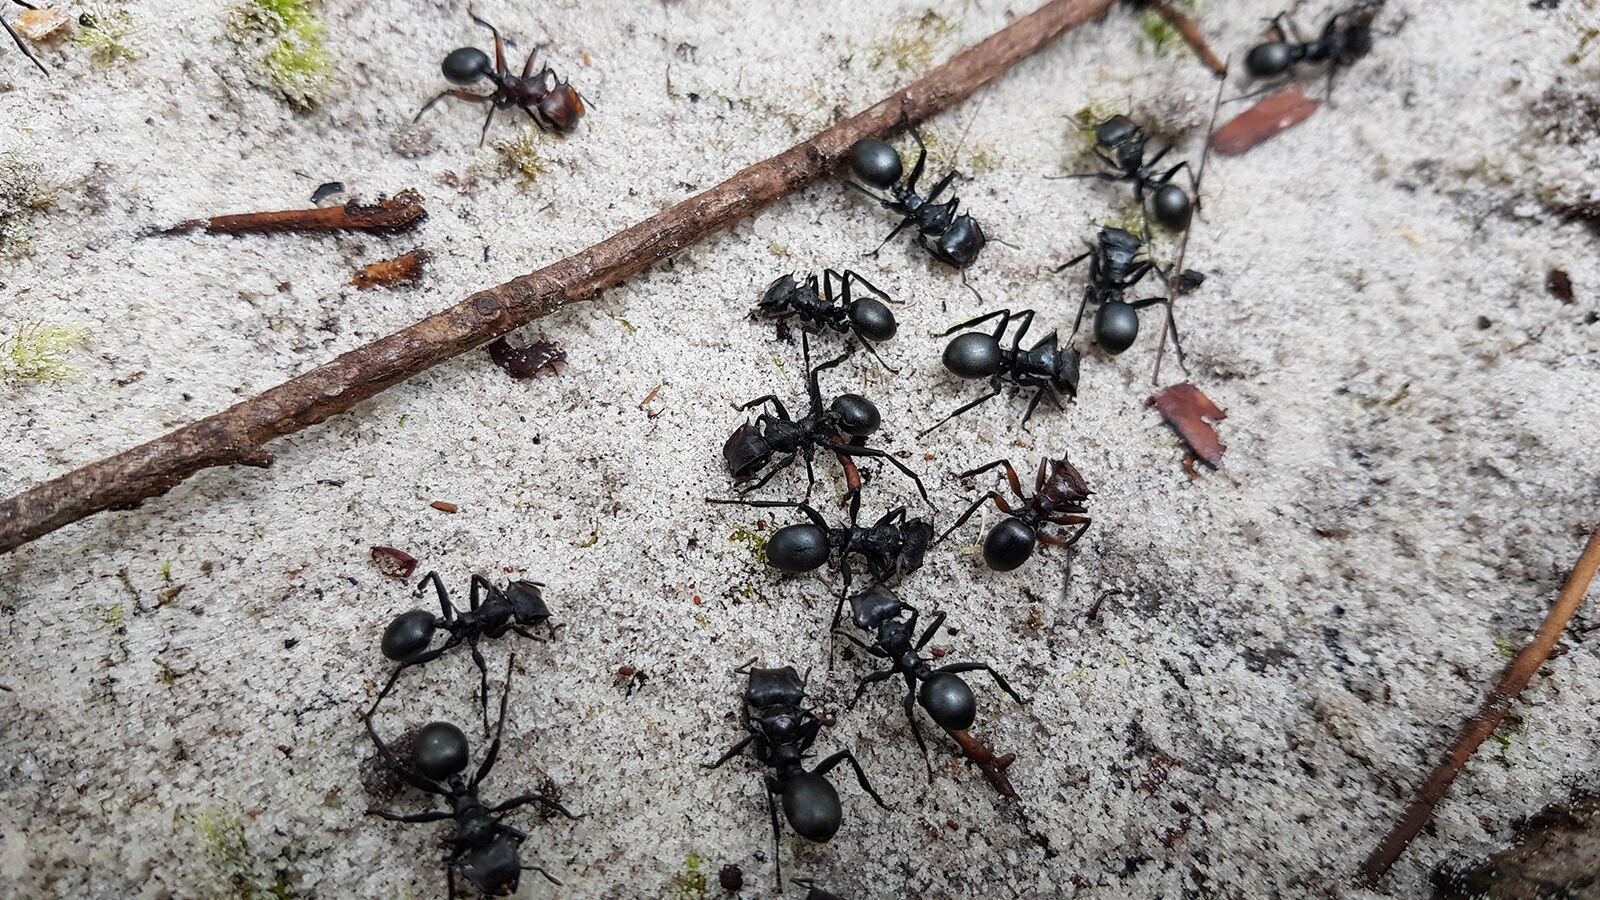 Zehirli Karınca Ayini, Brezilya<br>
